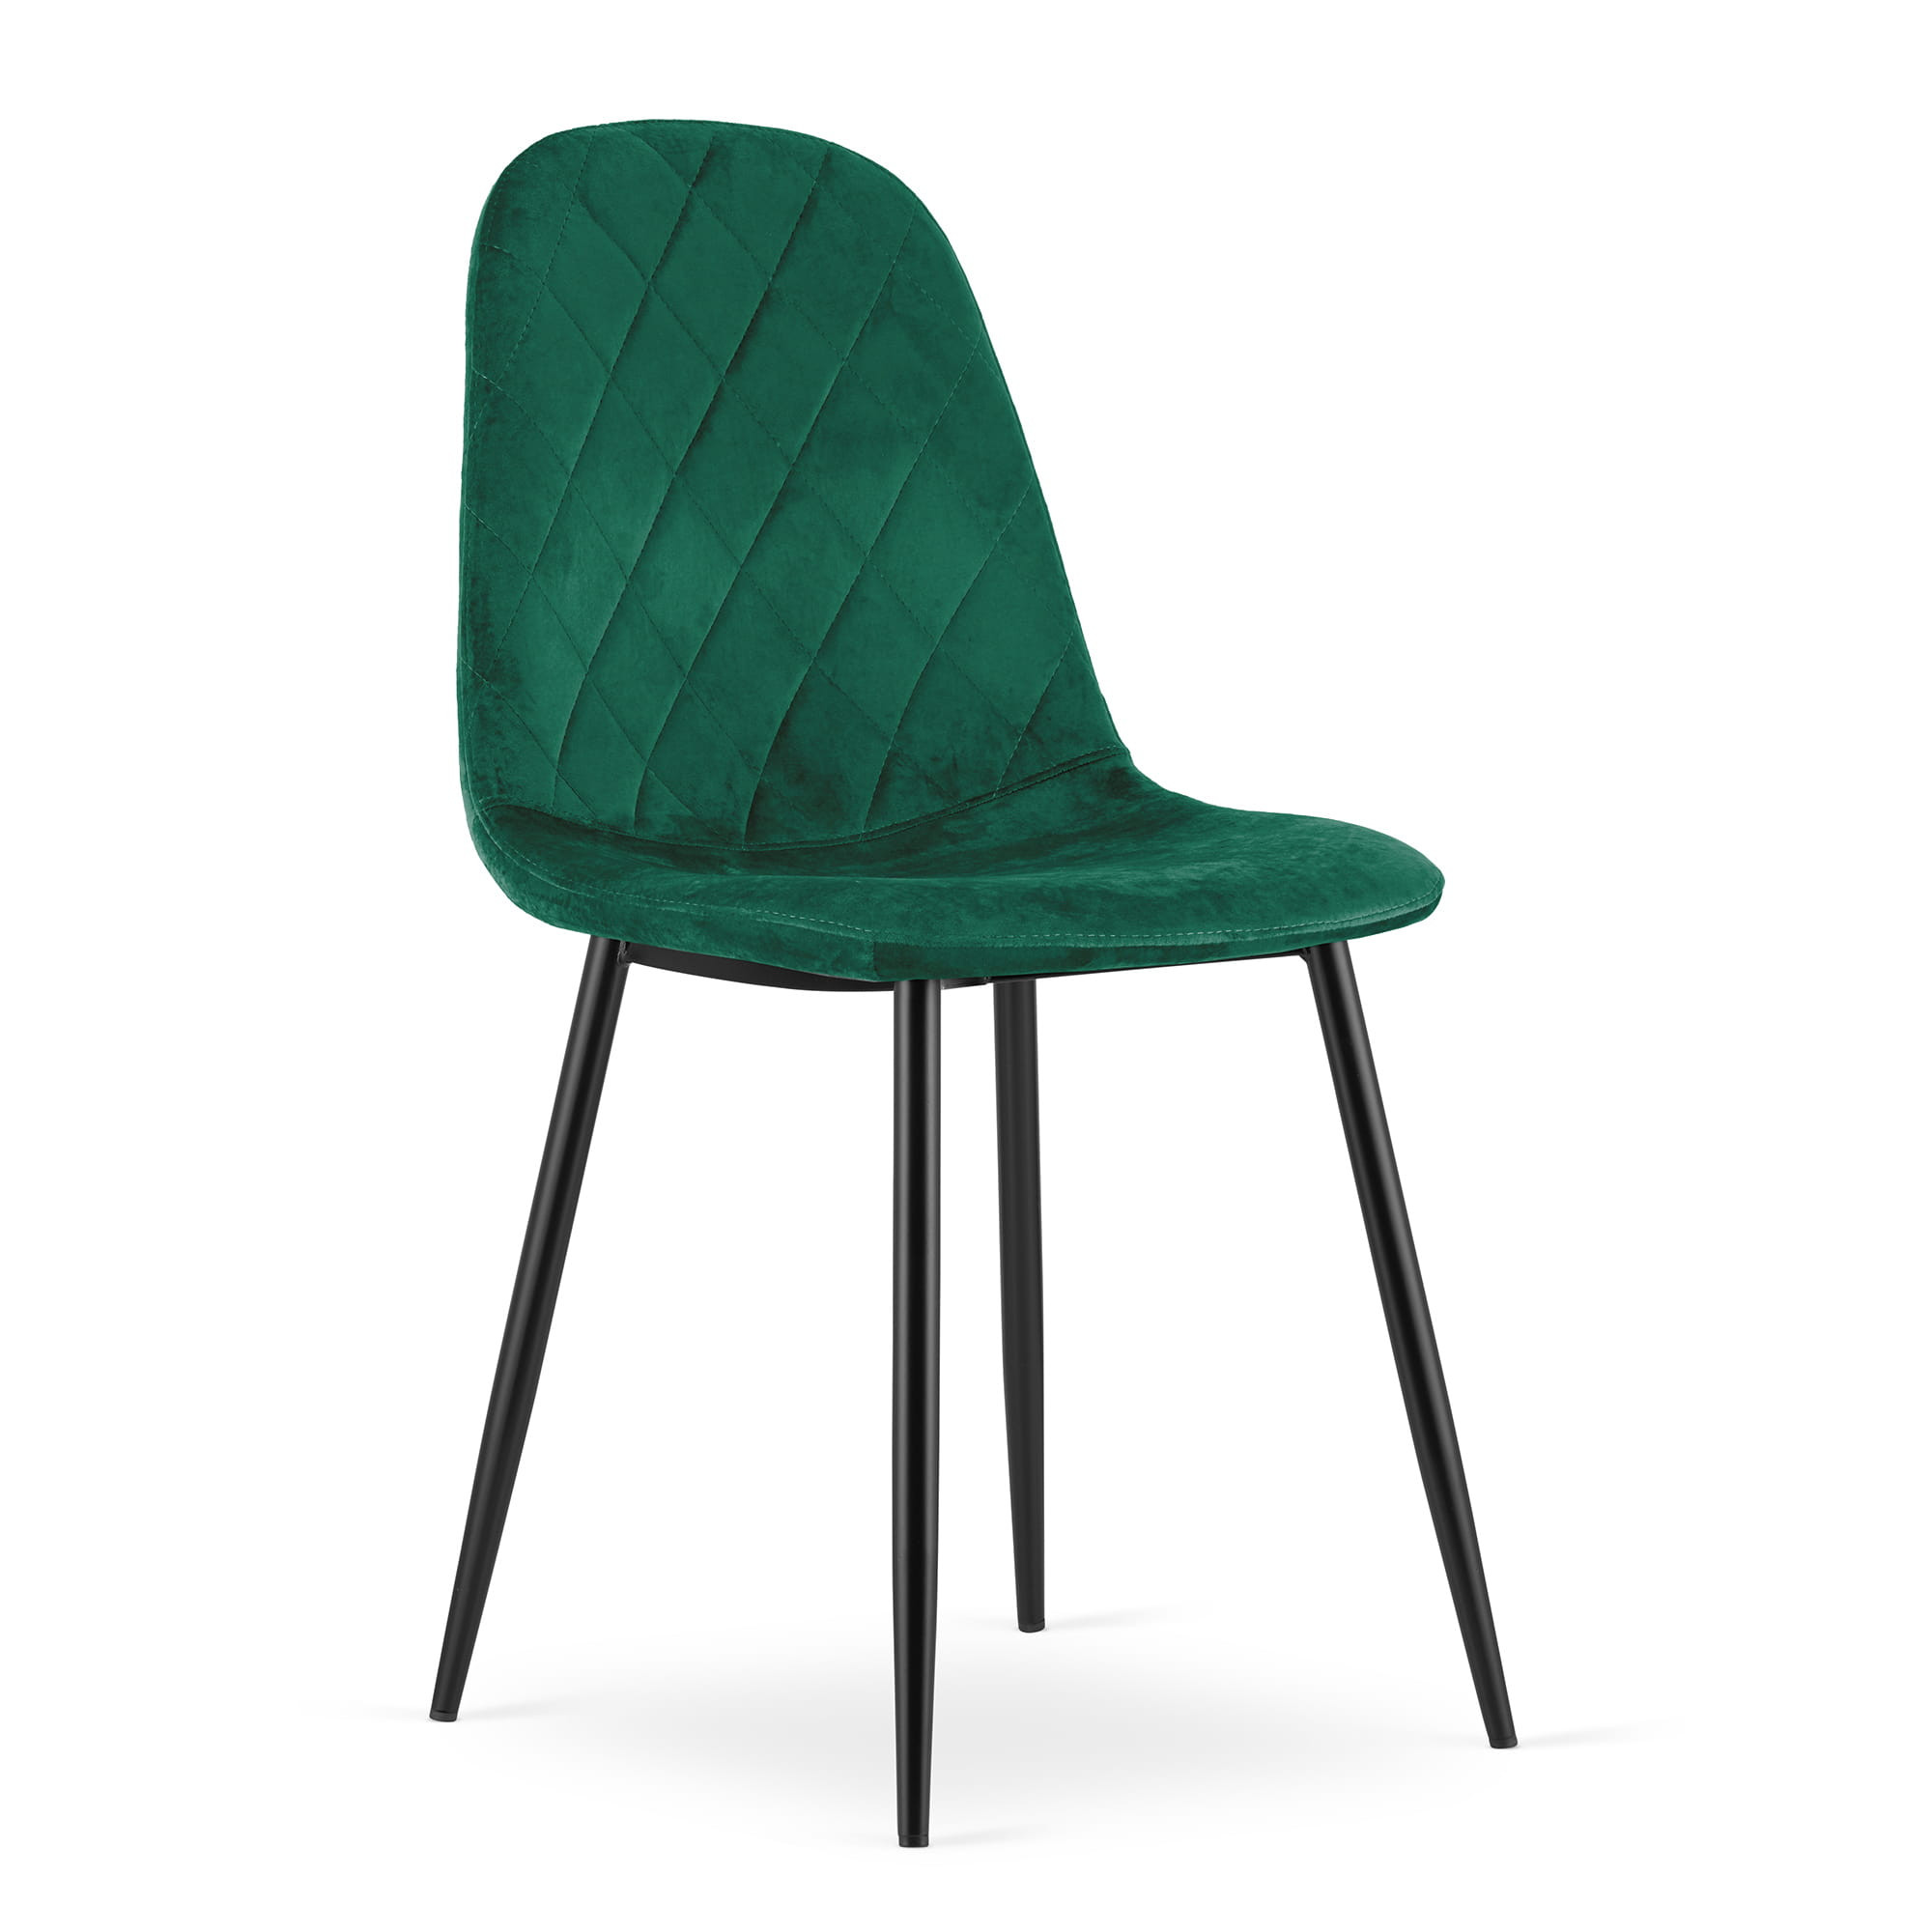 Jídelní židle ASTI tmavě zelená